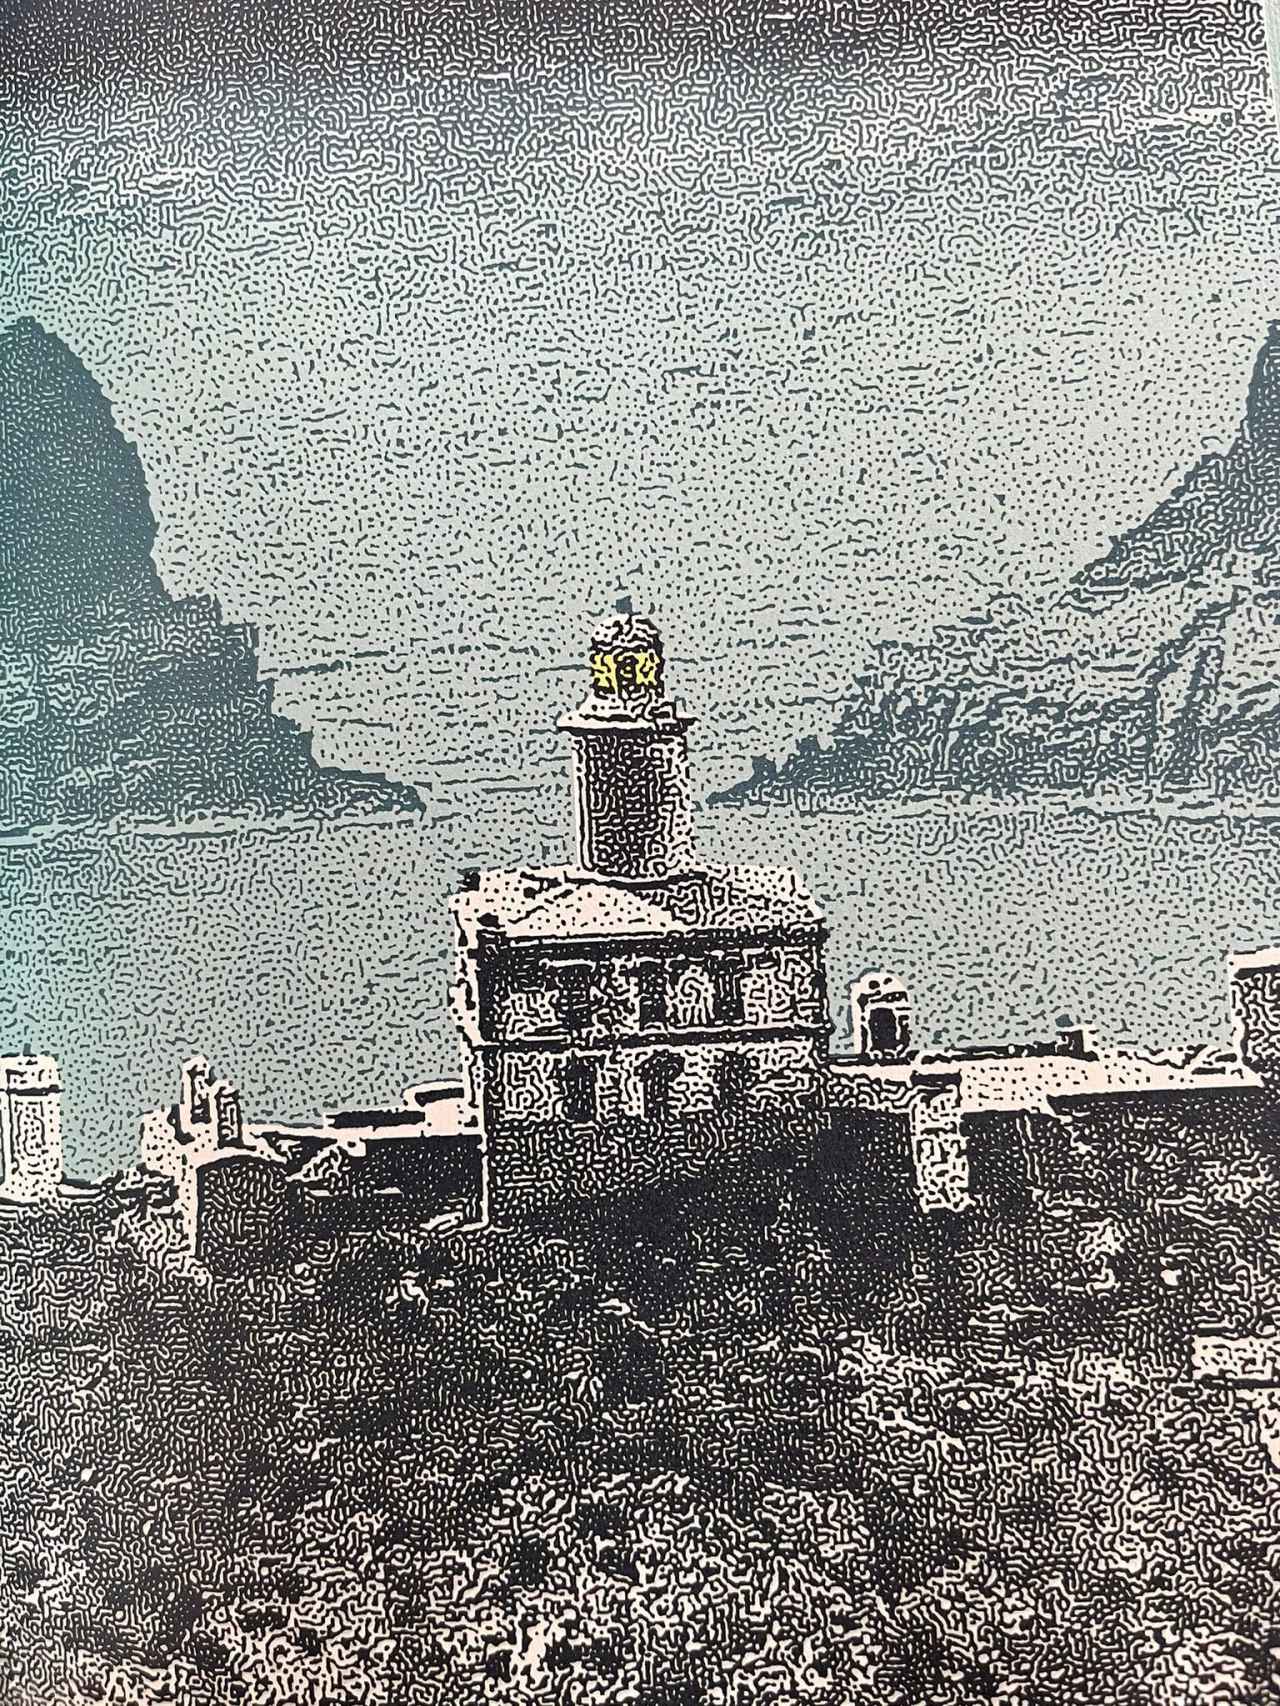 El faro de las islas Columbretes ilustrado por González Macías.